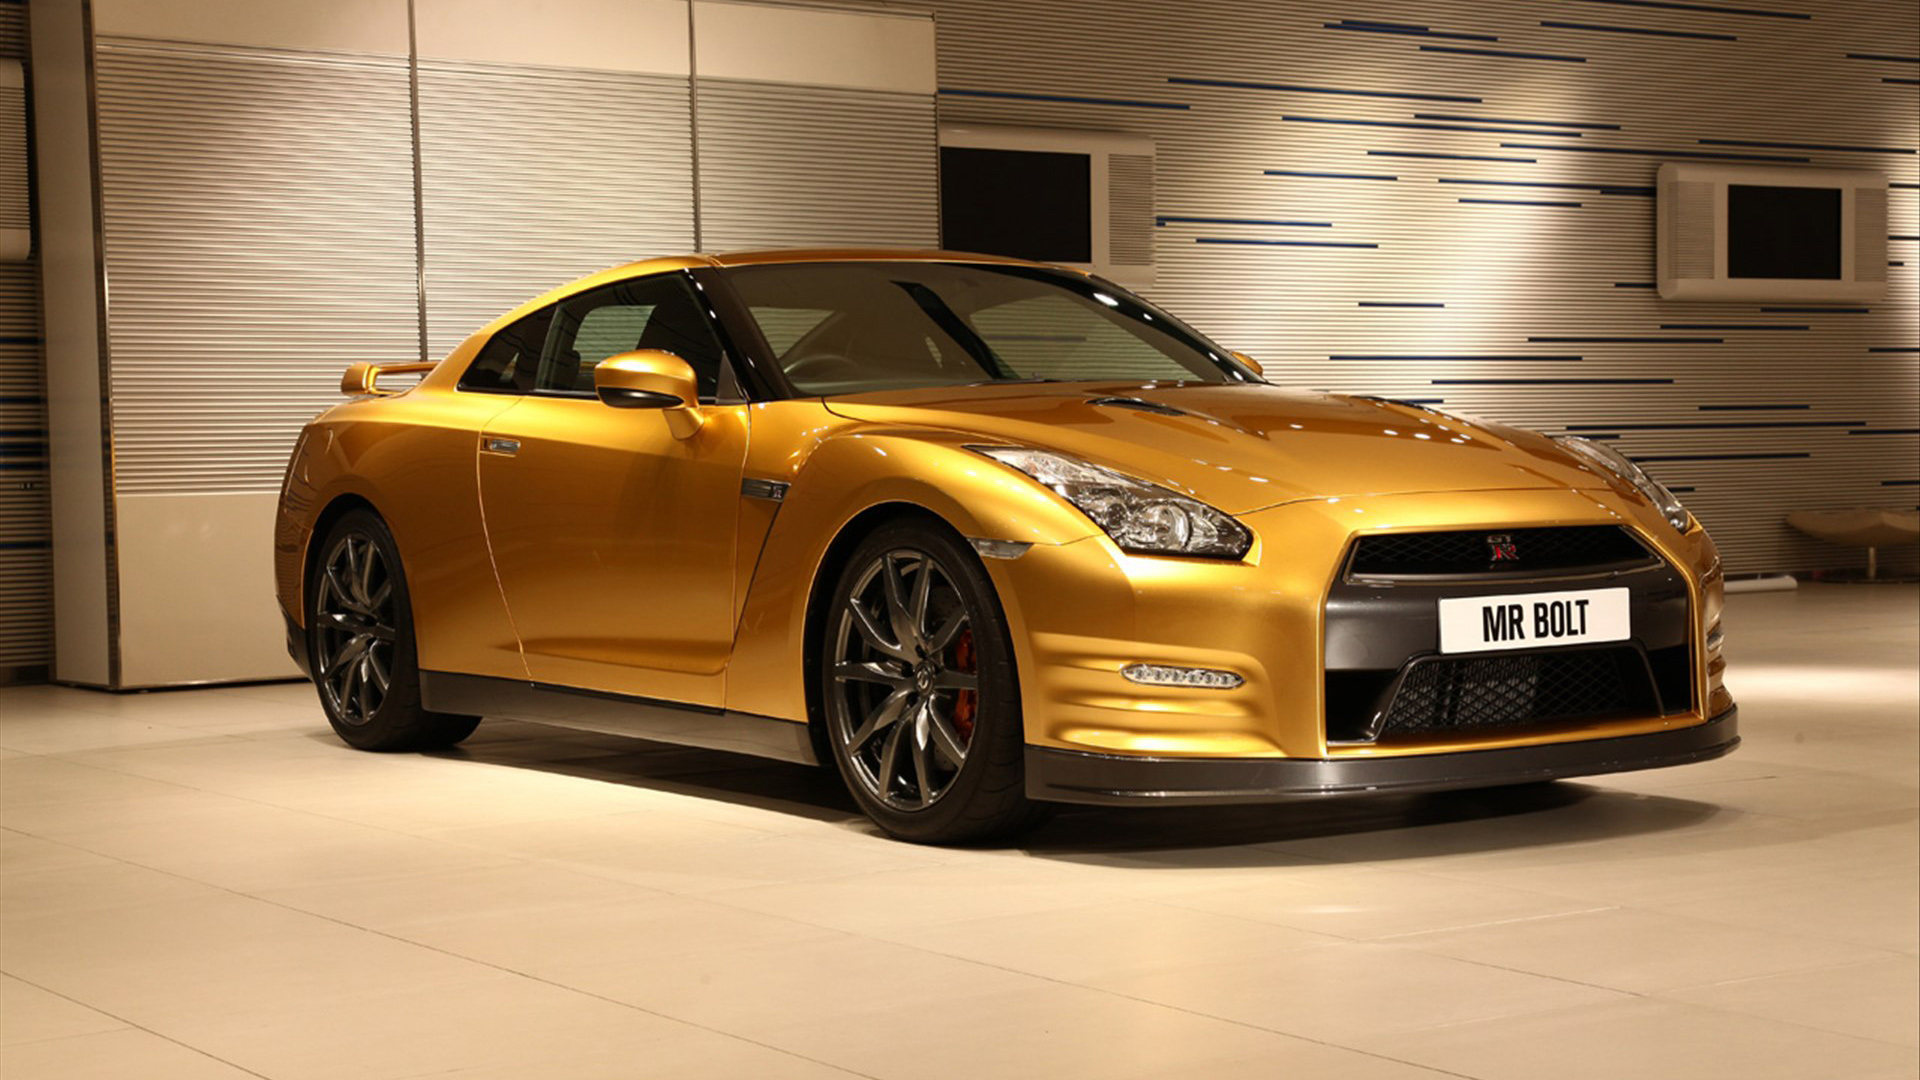 Gt4 gold. Ниссан ГТР 35 золотой. Nissan gt-r r35 золотой. Nissan gt-r Bolt Gold. Nissan GTR r35 Gold.